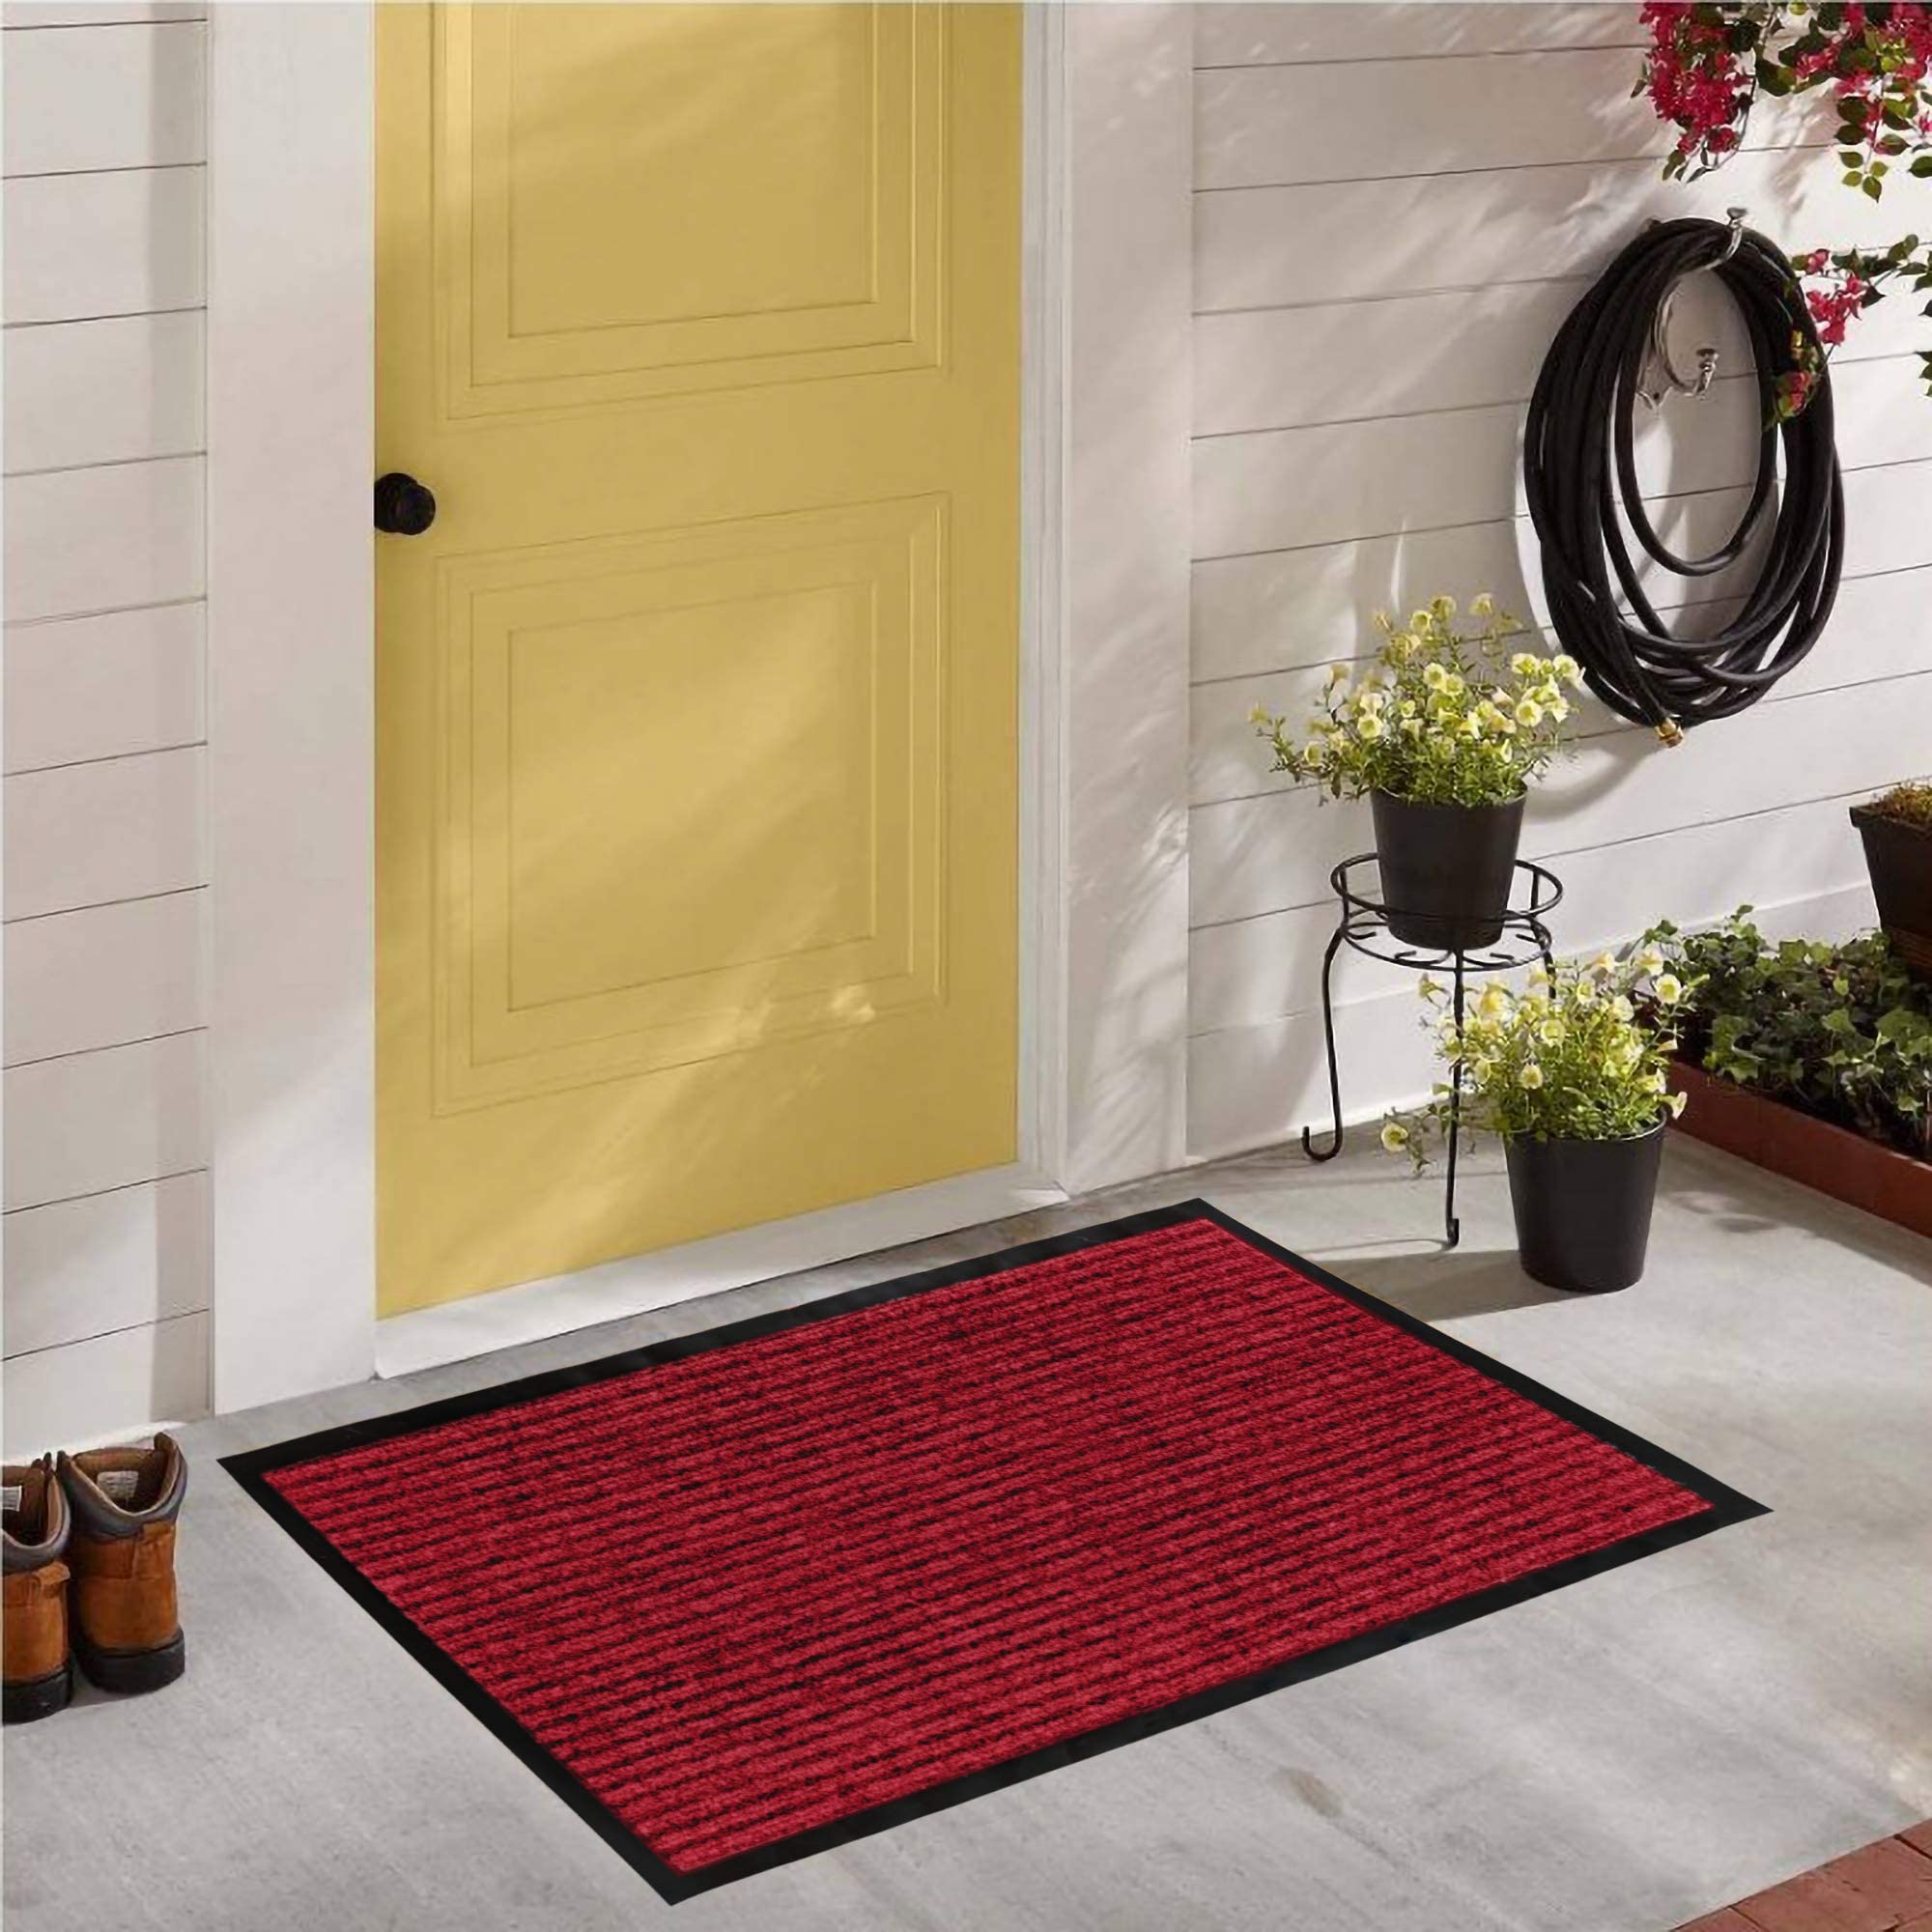 LuxUrux Durable Rubber Door Mat, Heavy Duty Doormat, Indoor Outdoor Rug, Easy Clean, Waterproof, Low-Profile Door Rugs for Entry, Patio, Garage, (17''x 30'' 2 Pack, Striped Red)  - Like New